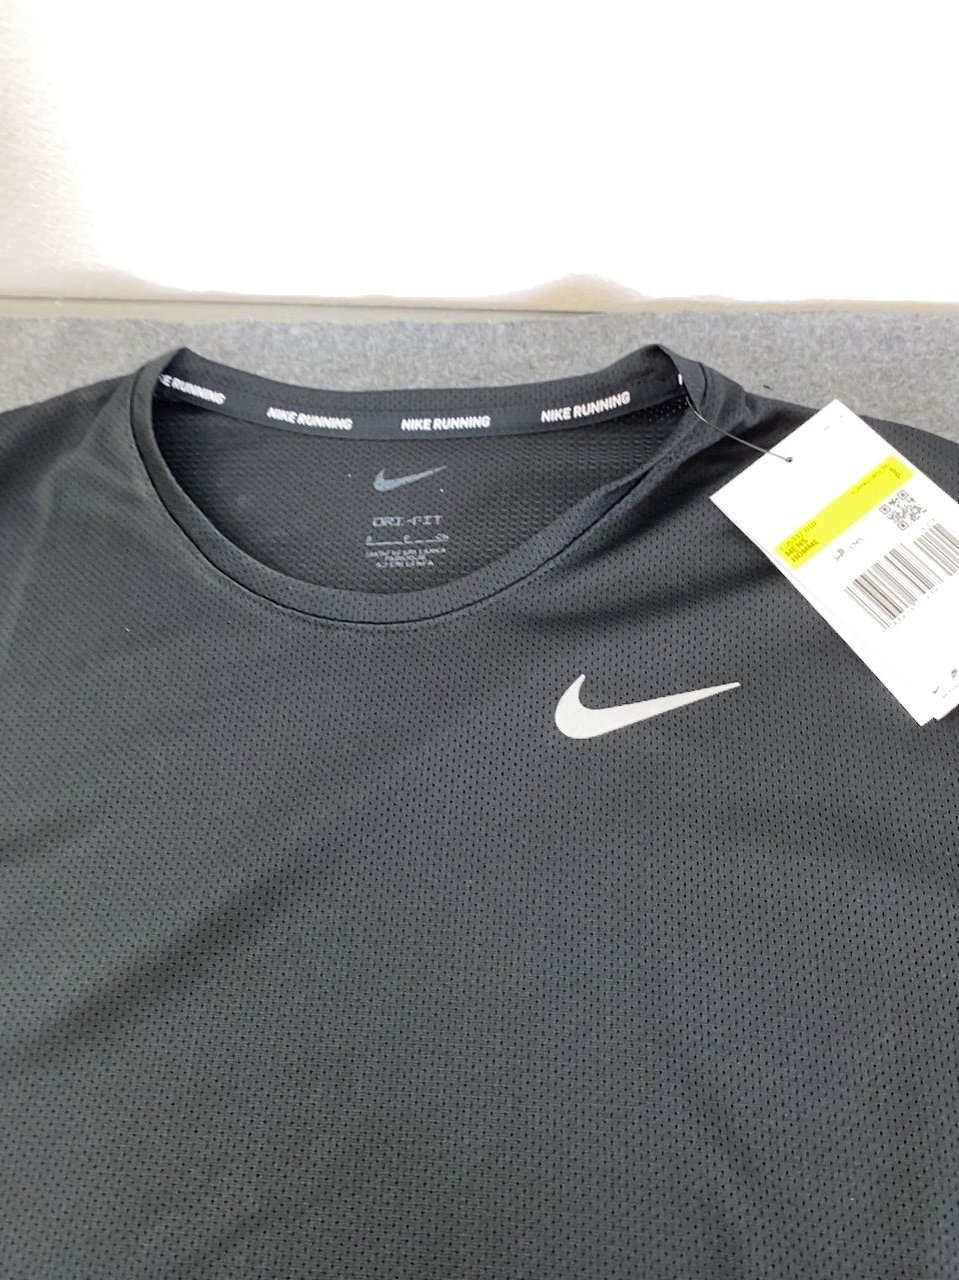 Pánské funkční triko s krátkým rukávem- černé Nike - Running vel. S